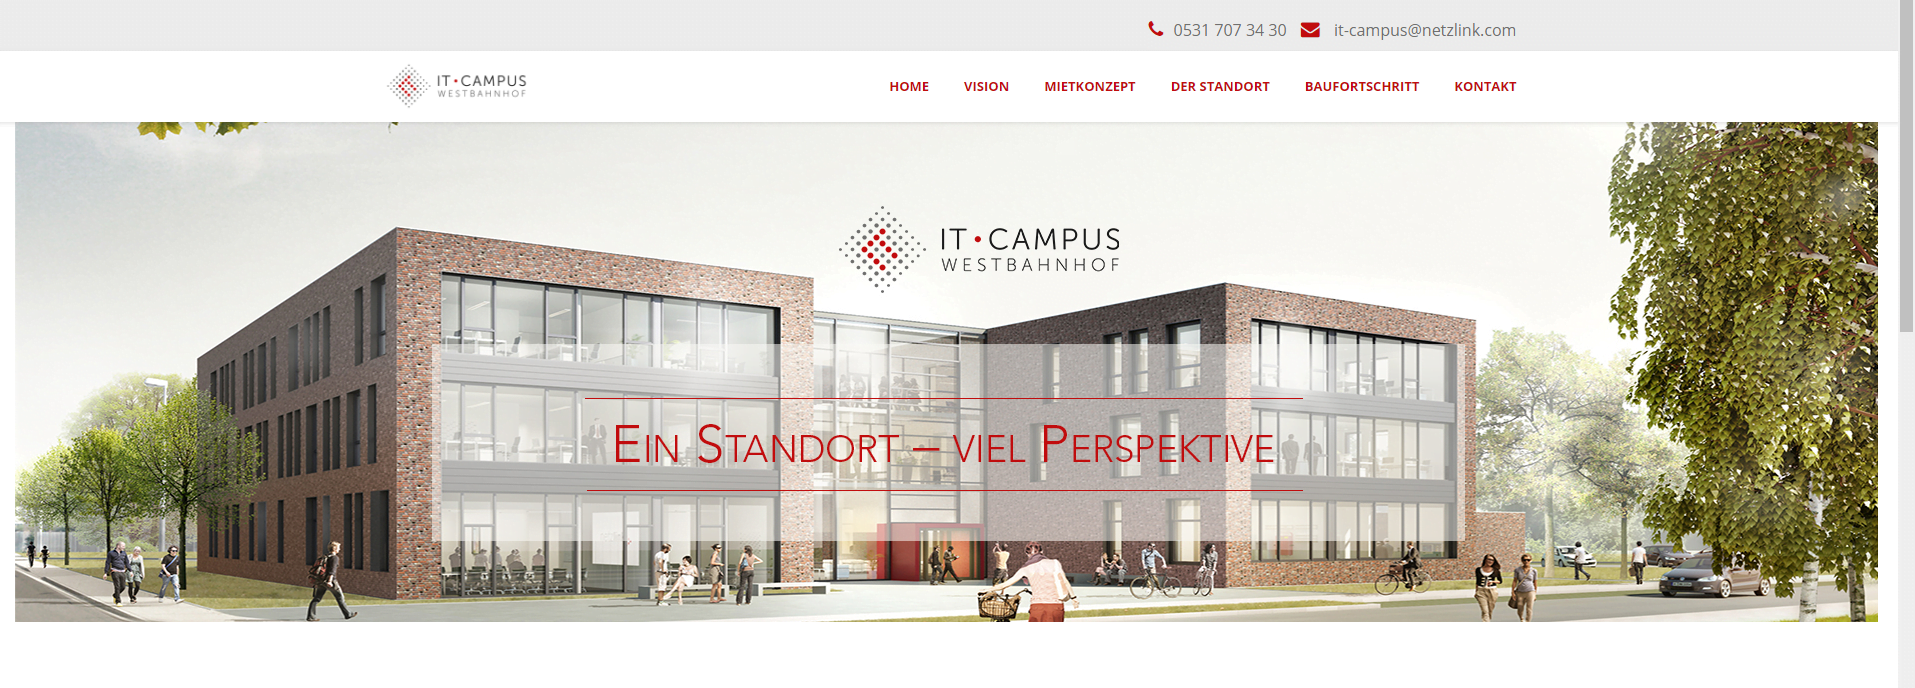 Netzlink - IT-Campus